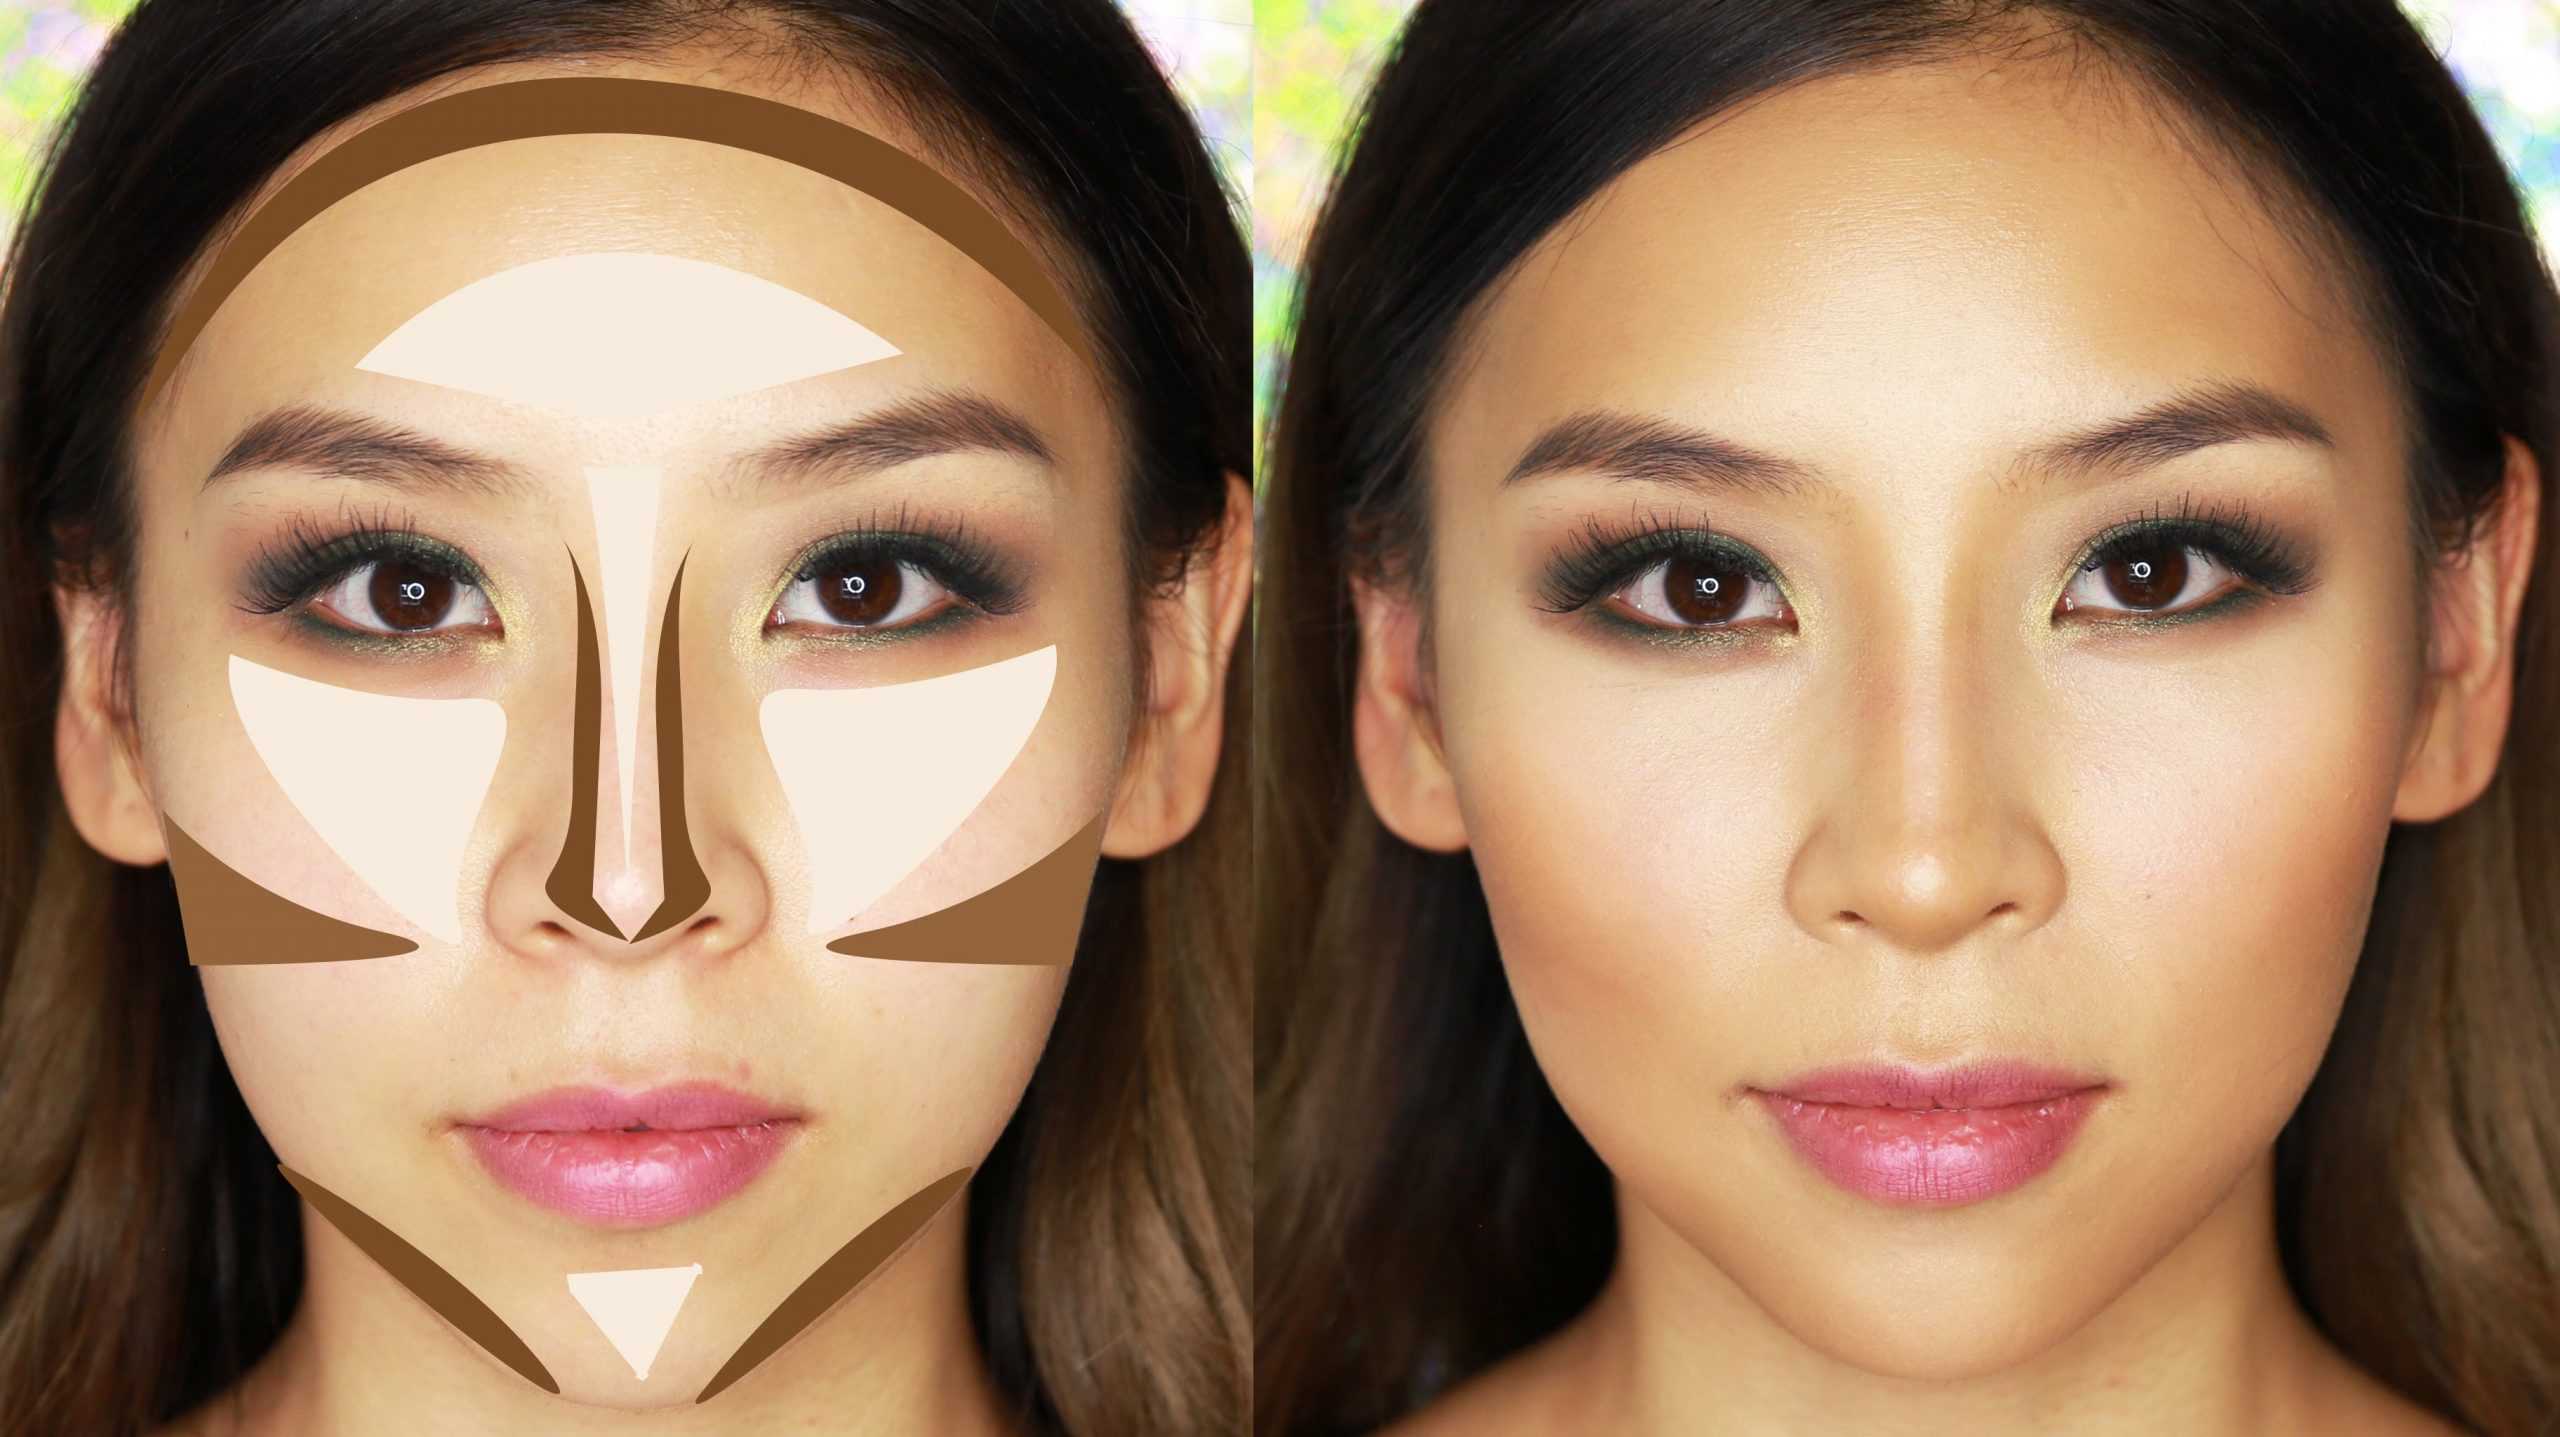 Как уменьшить нос макияжем - правильно, какими средствами, фото и видео